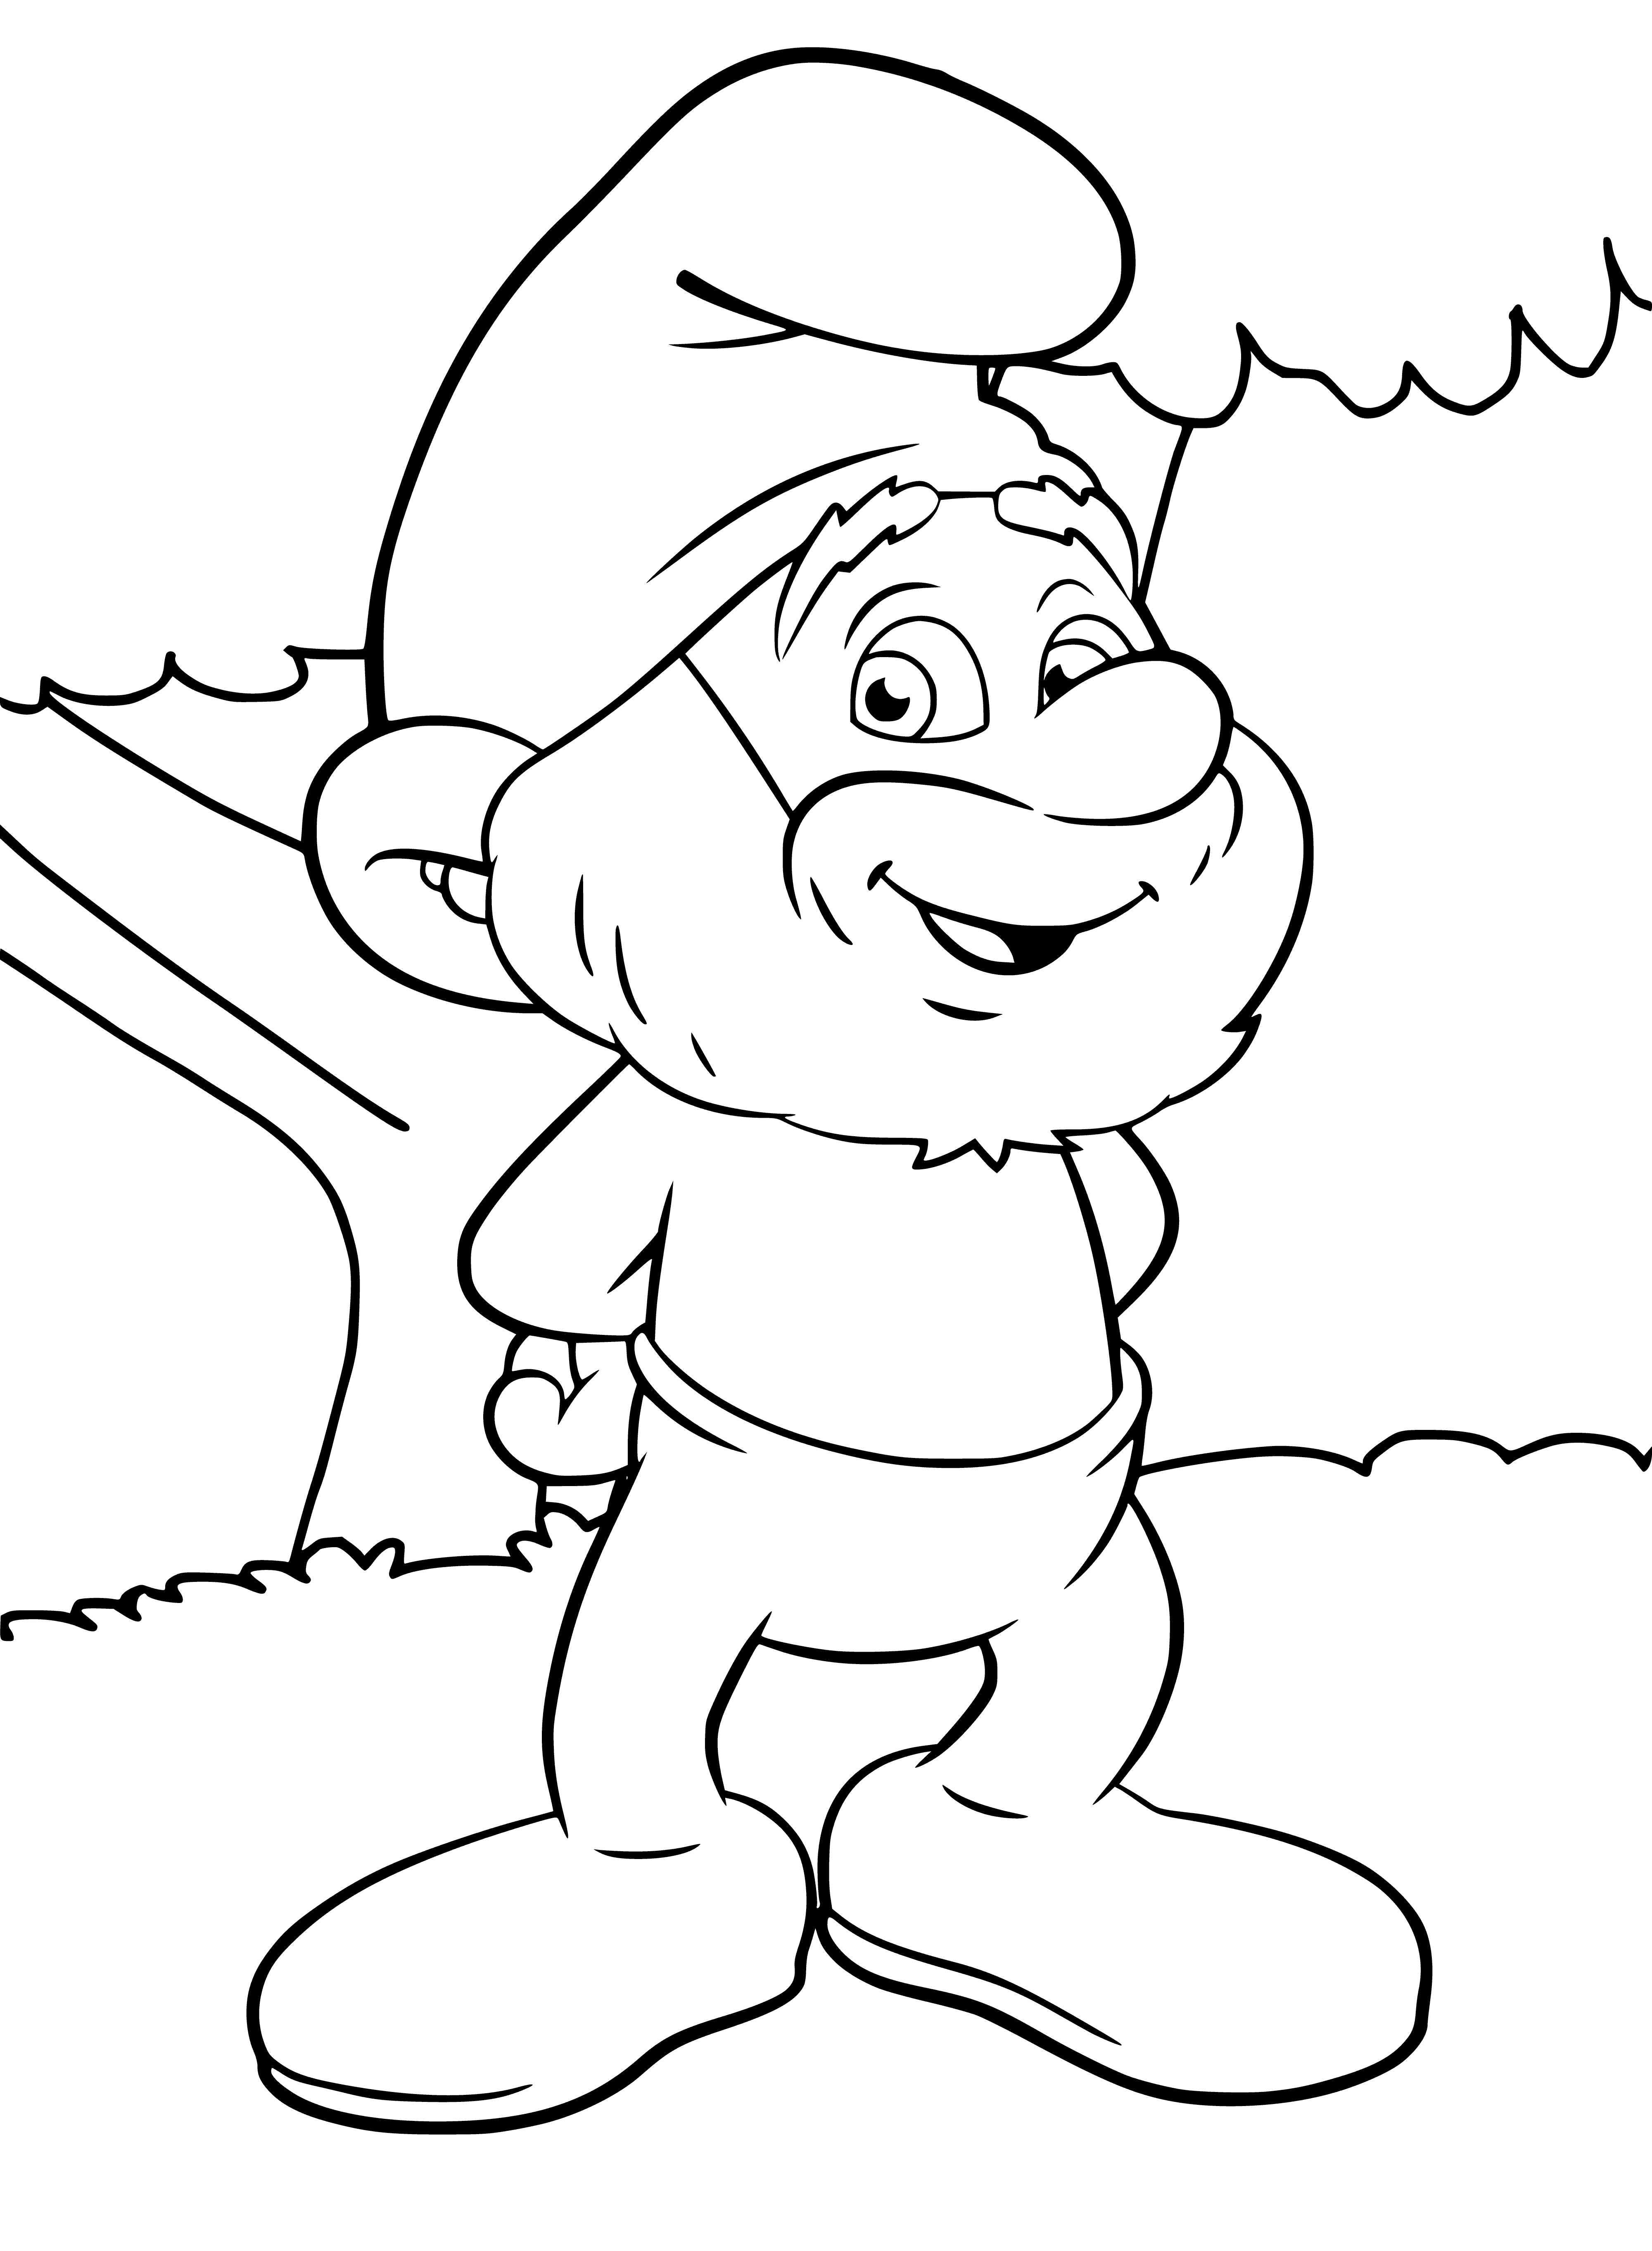 Papa Smurf coloring page